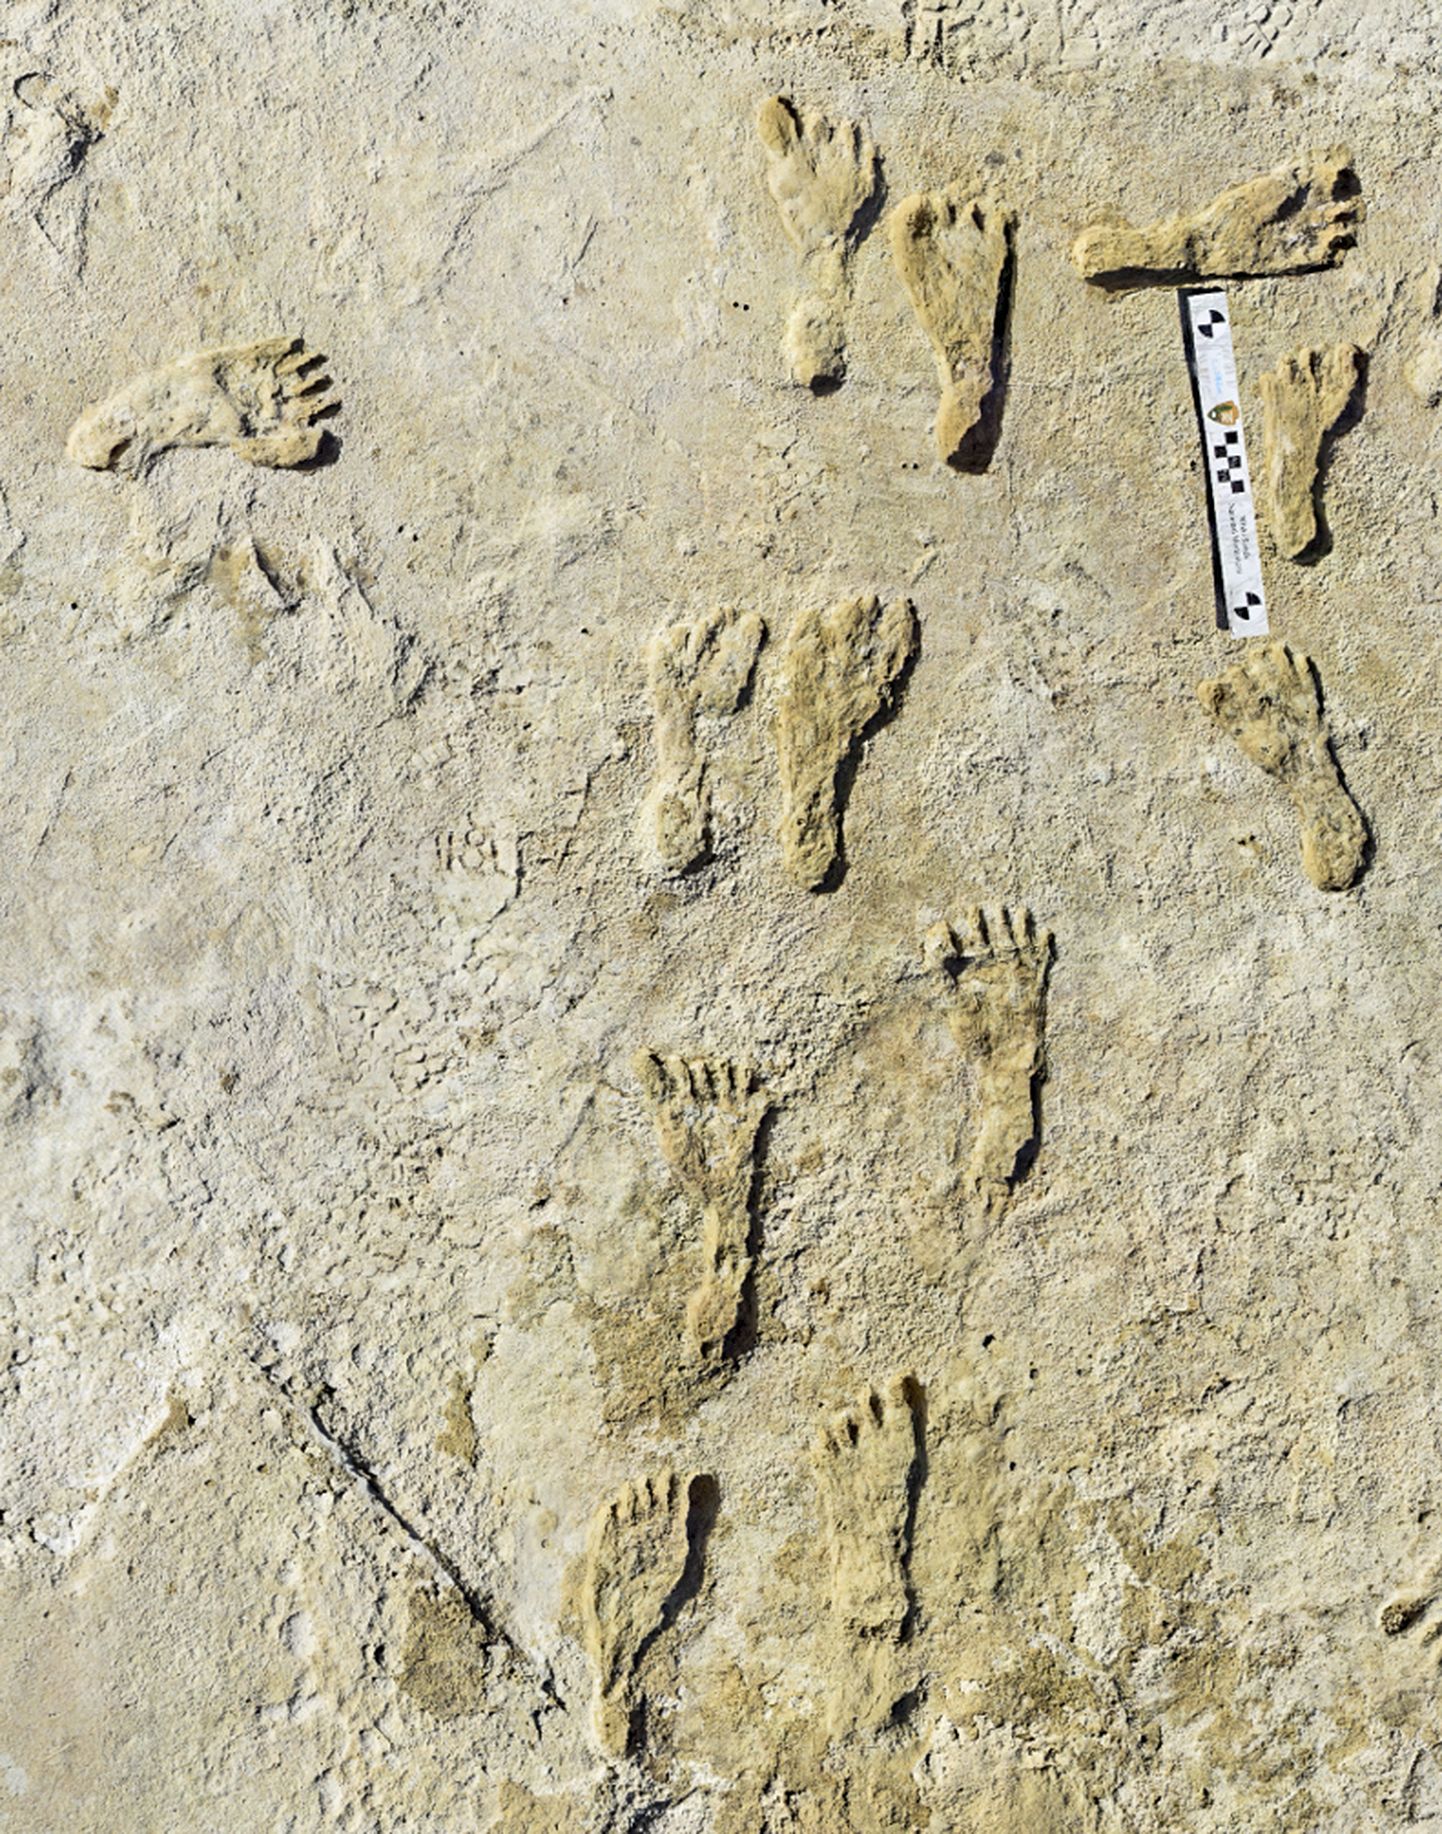 Kivistunud jalajäljed White Sandsi rahvuspargis New Mexicos. Jäljed näitavad, et varajased inimesed kõndisid mööda Põhja-Ameerikat juba umbes 23 000 aastat tagasi (palju varem, kui teadlased varem arvasid).